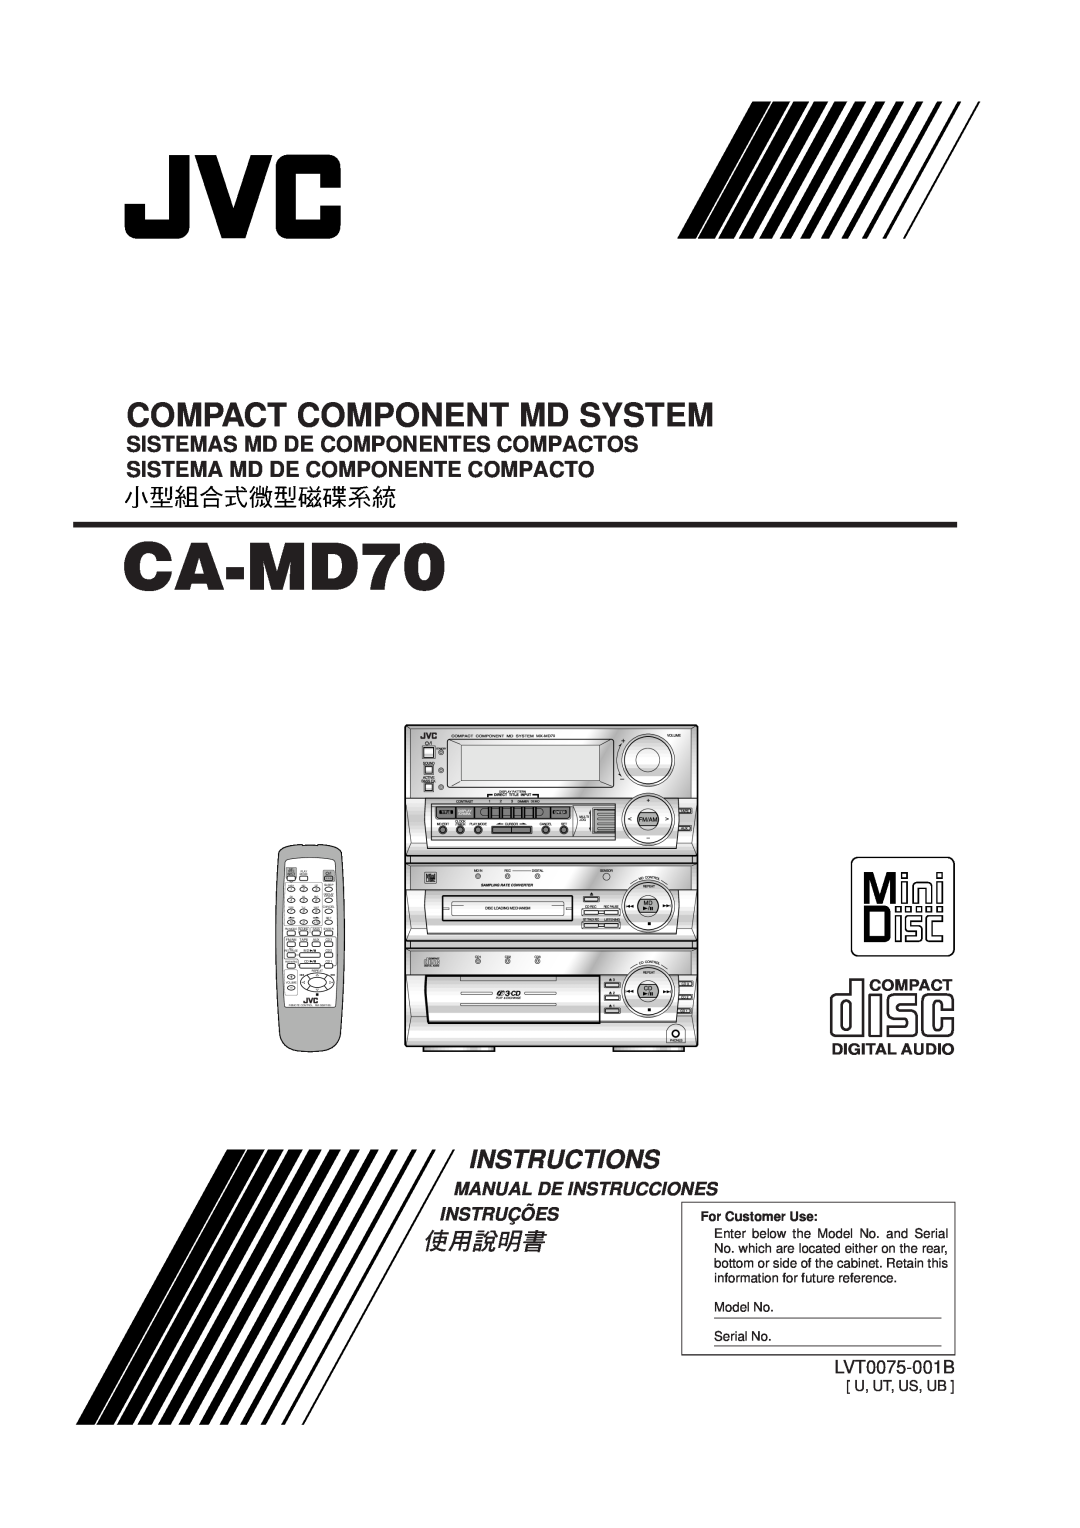 JVC CA-MD70 manual Compact Component Md System, Instructions, Manual De Instrucciones, Instruções, LVT0075-001B 